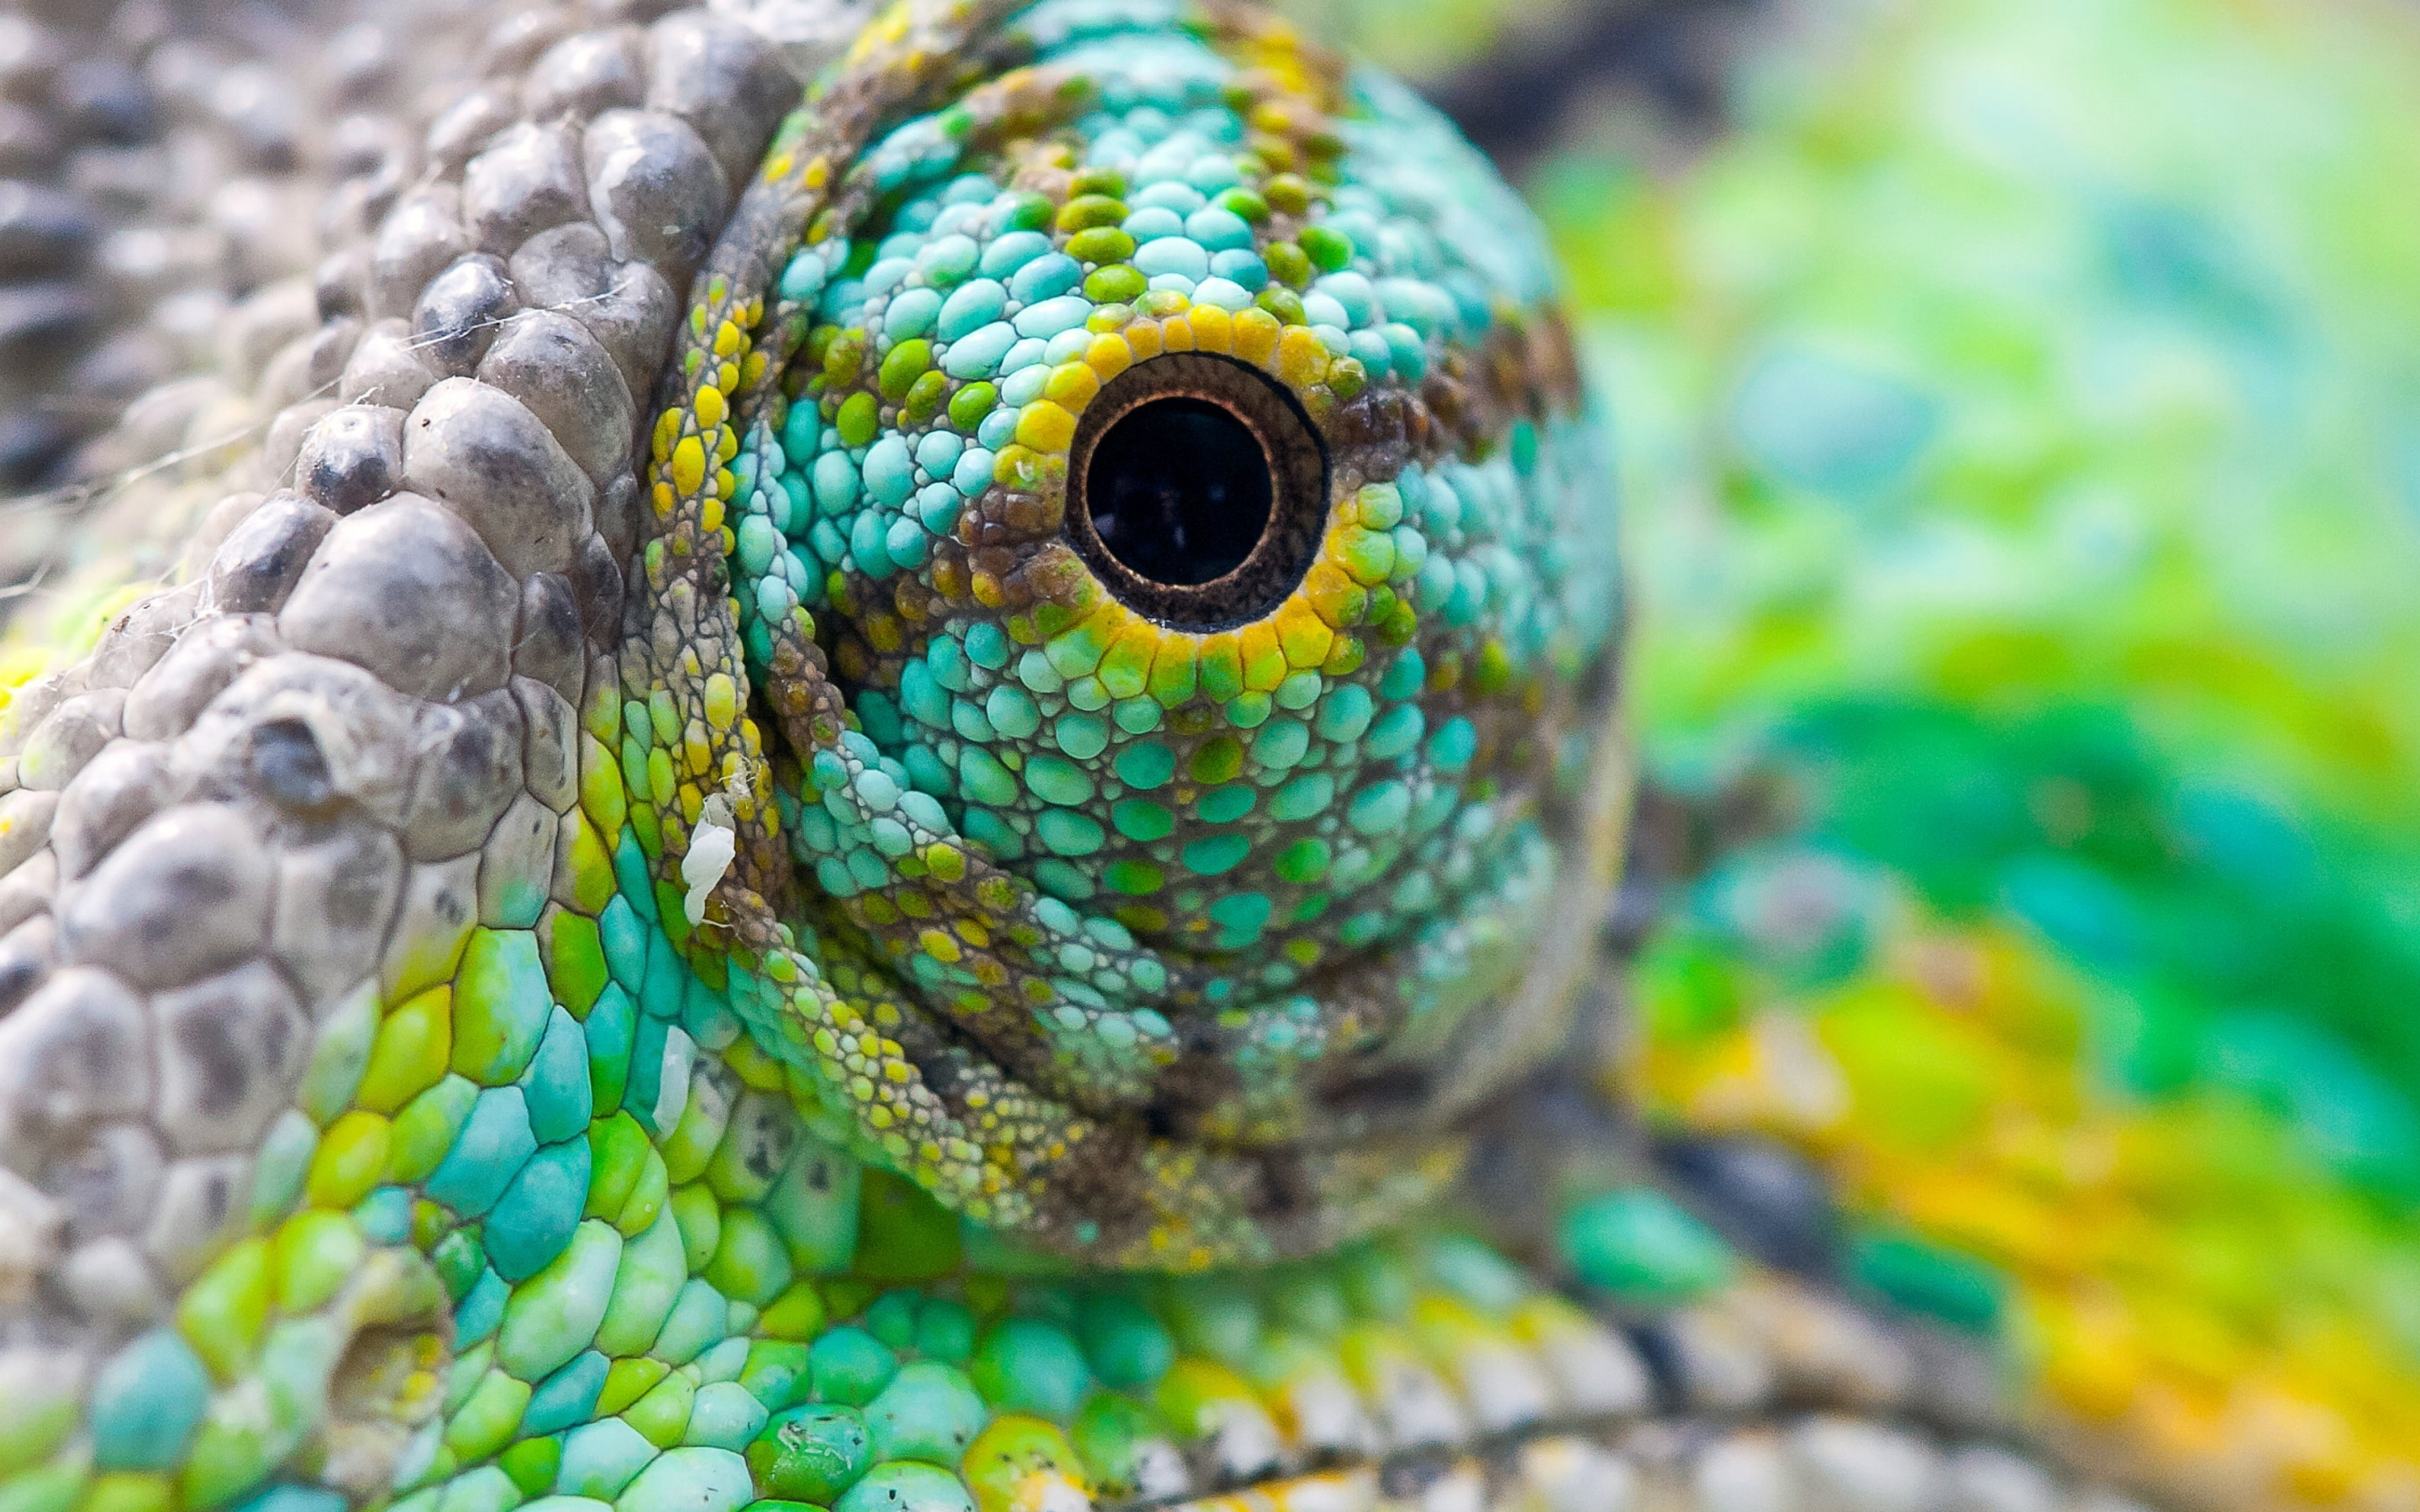 Chameleon's eye, close up, 2880x1800 wallpaper